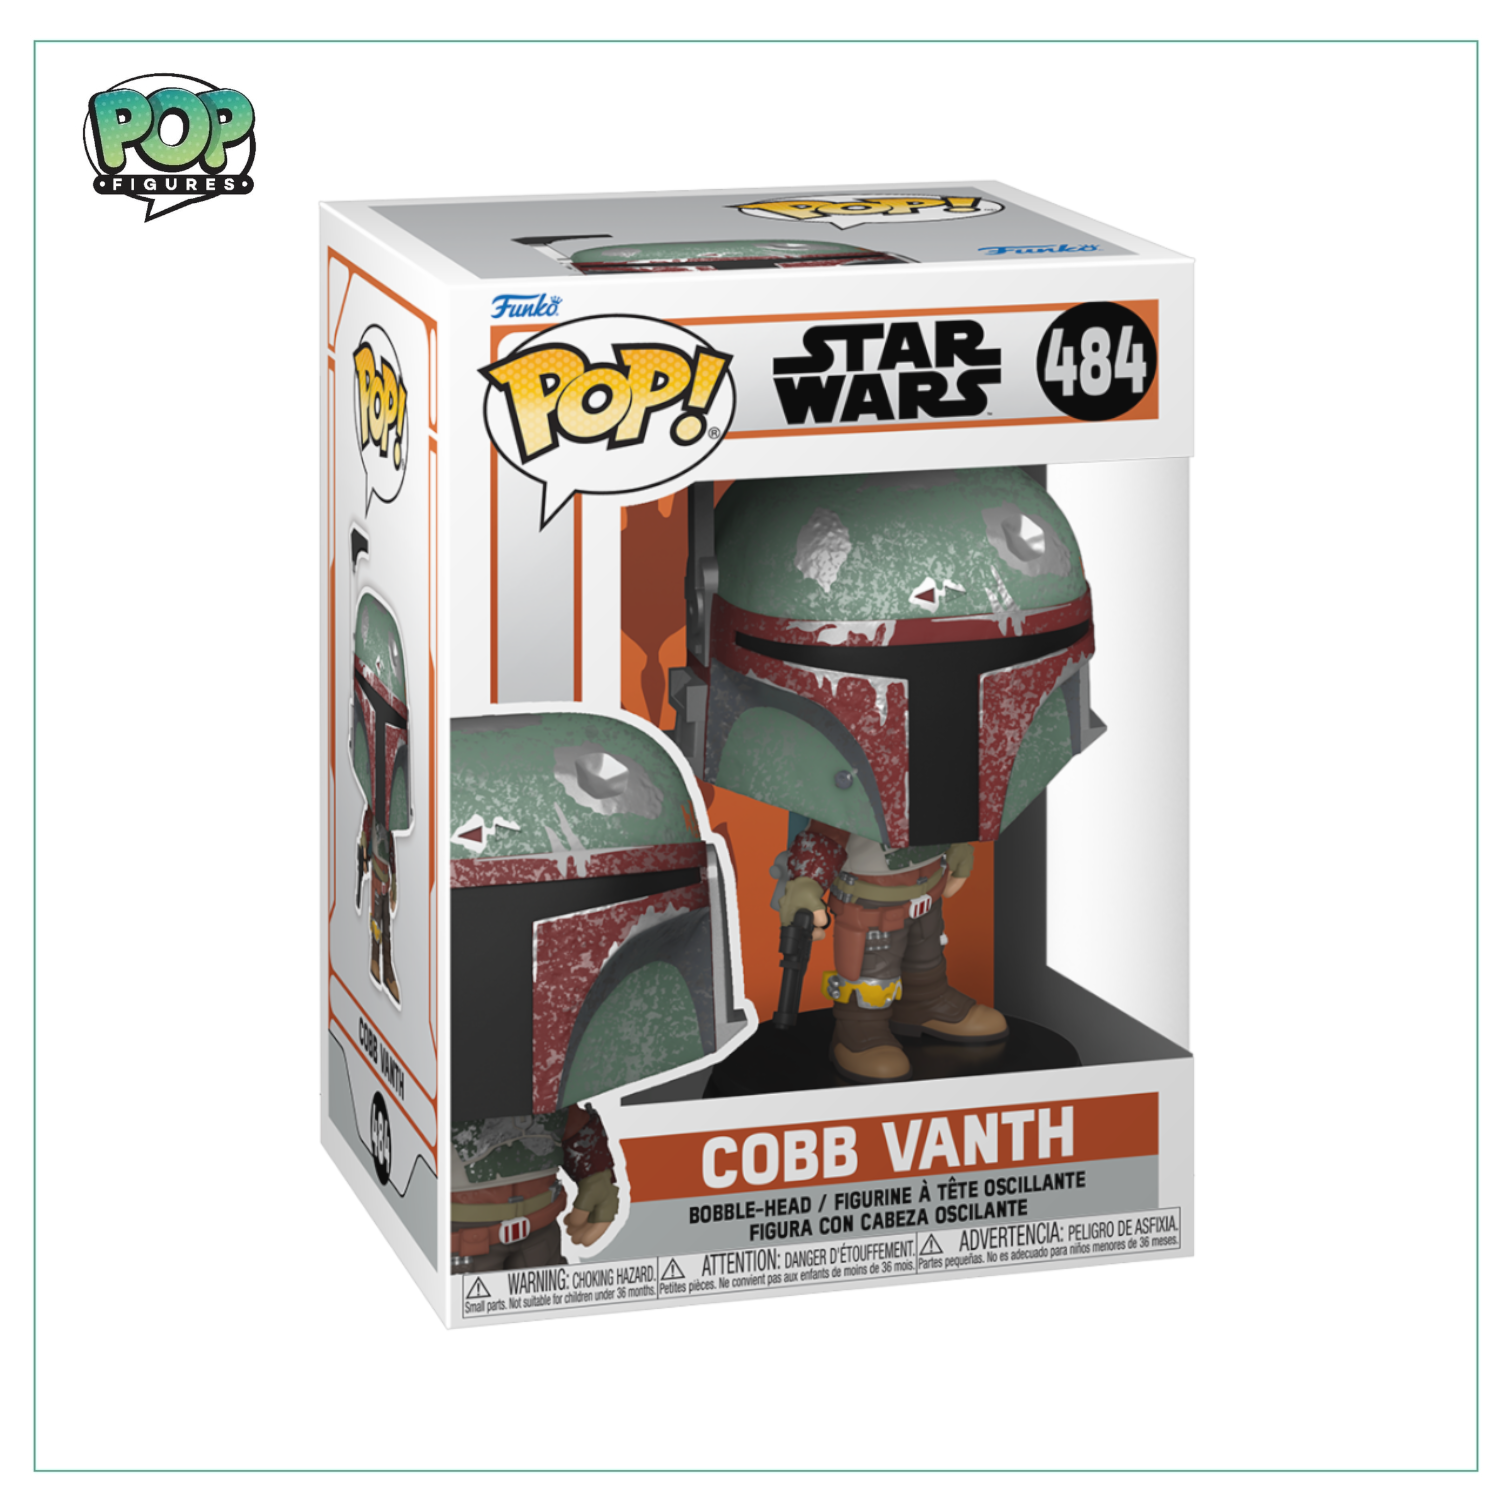 Cobb Vanth #484 Funko Pop! Star Wars